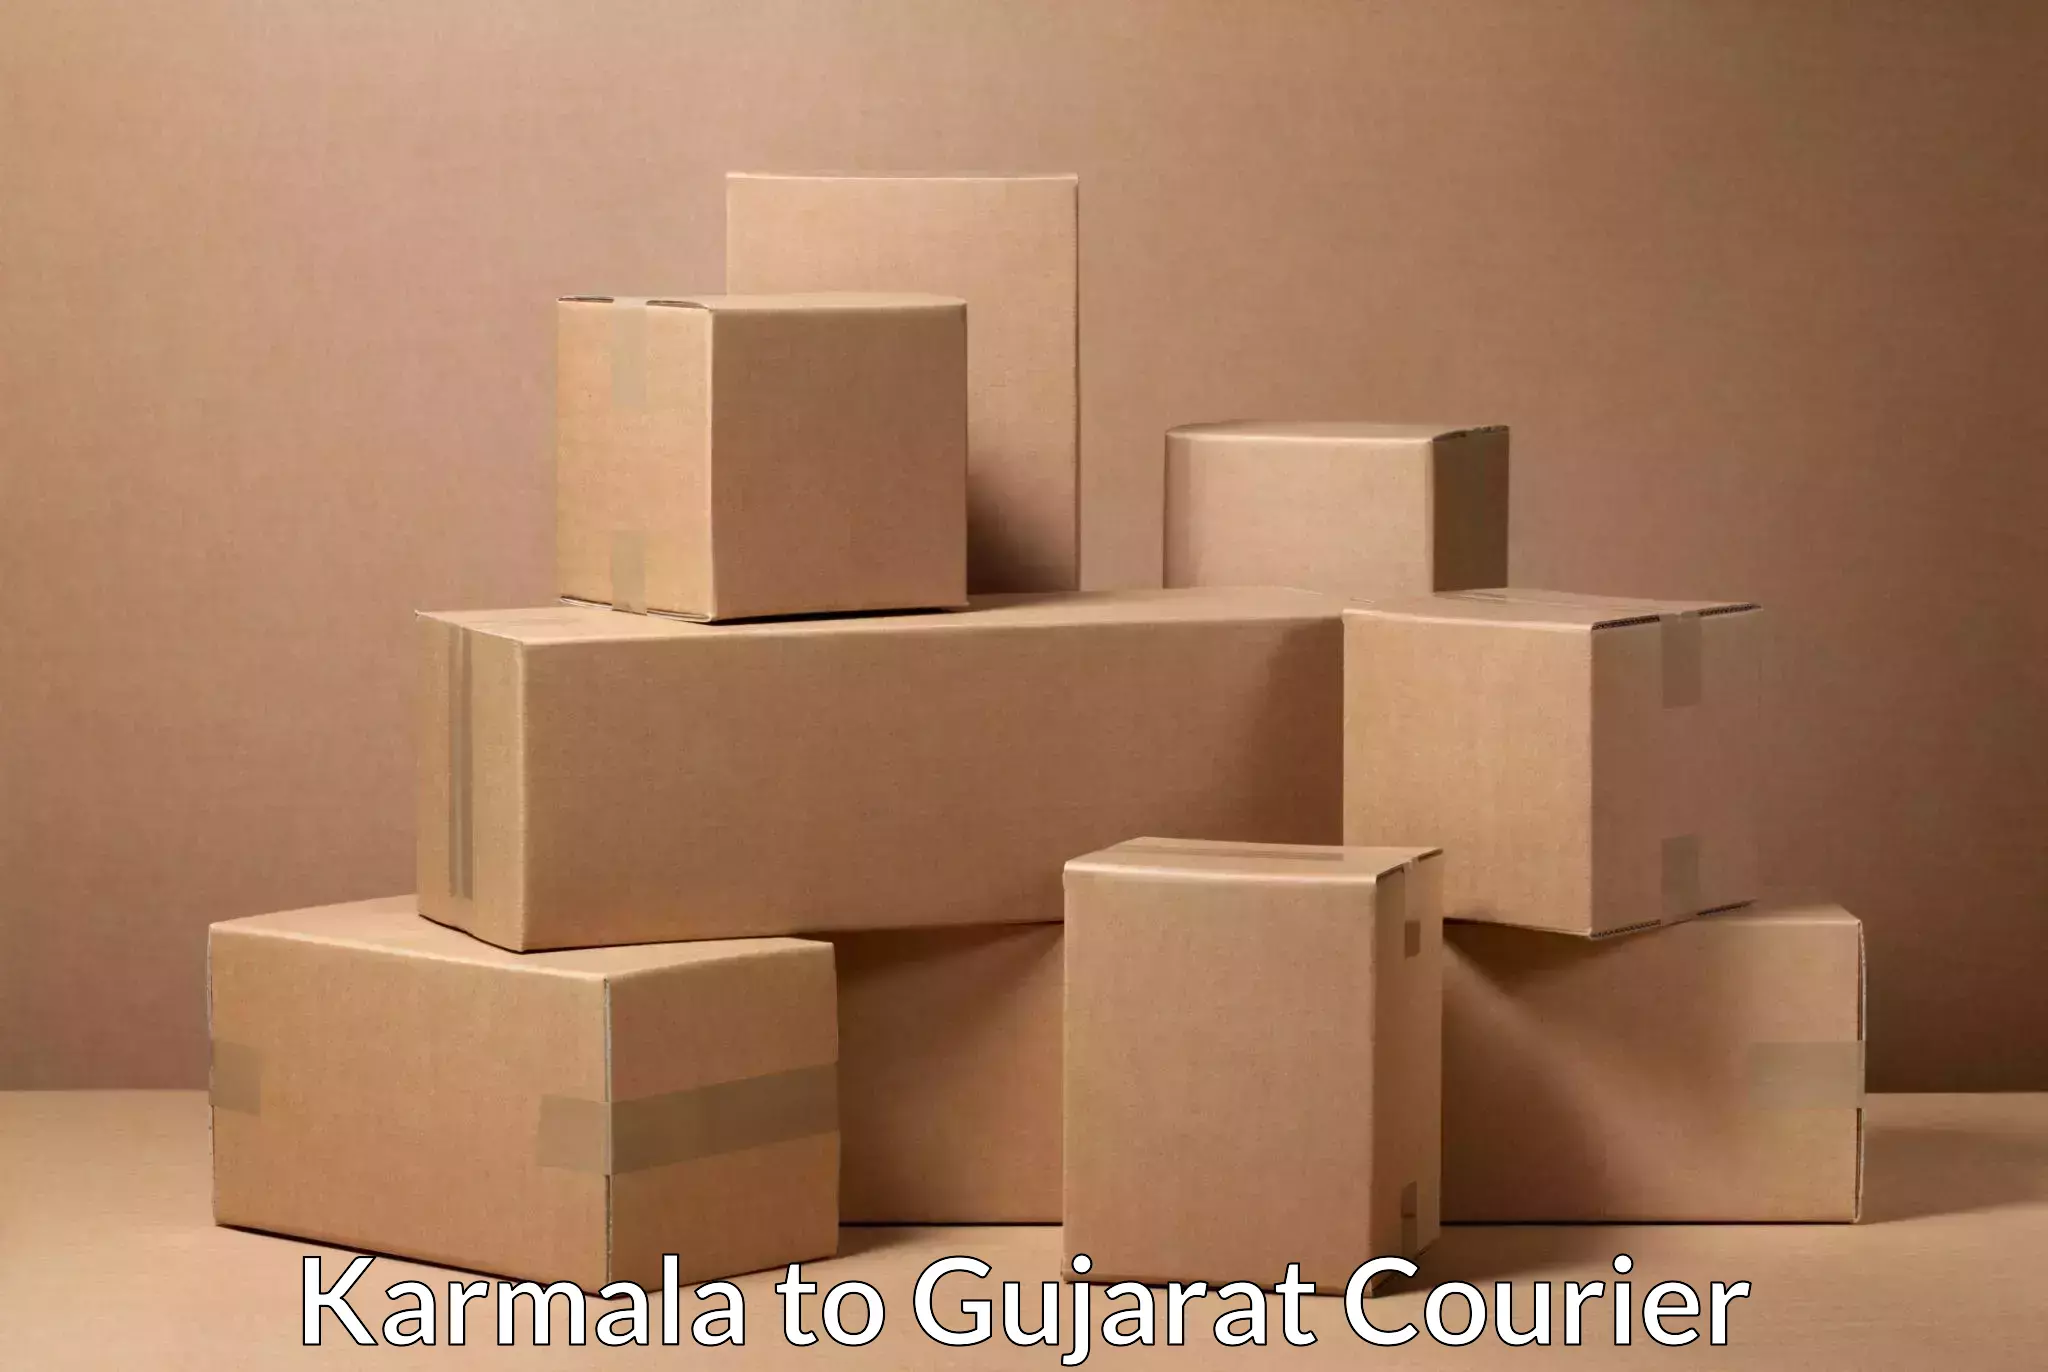 Tech-enabled shipping Karmala to Wankaner